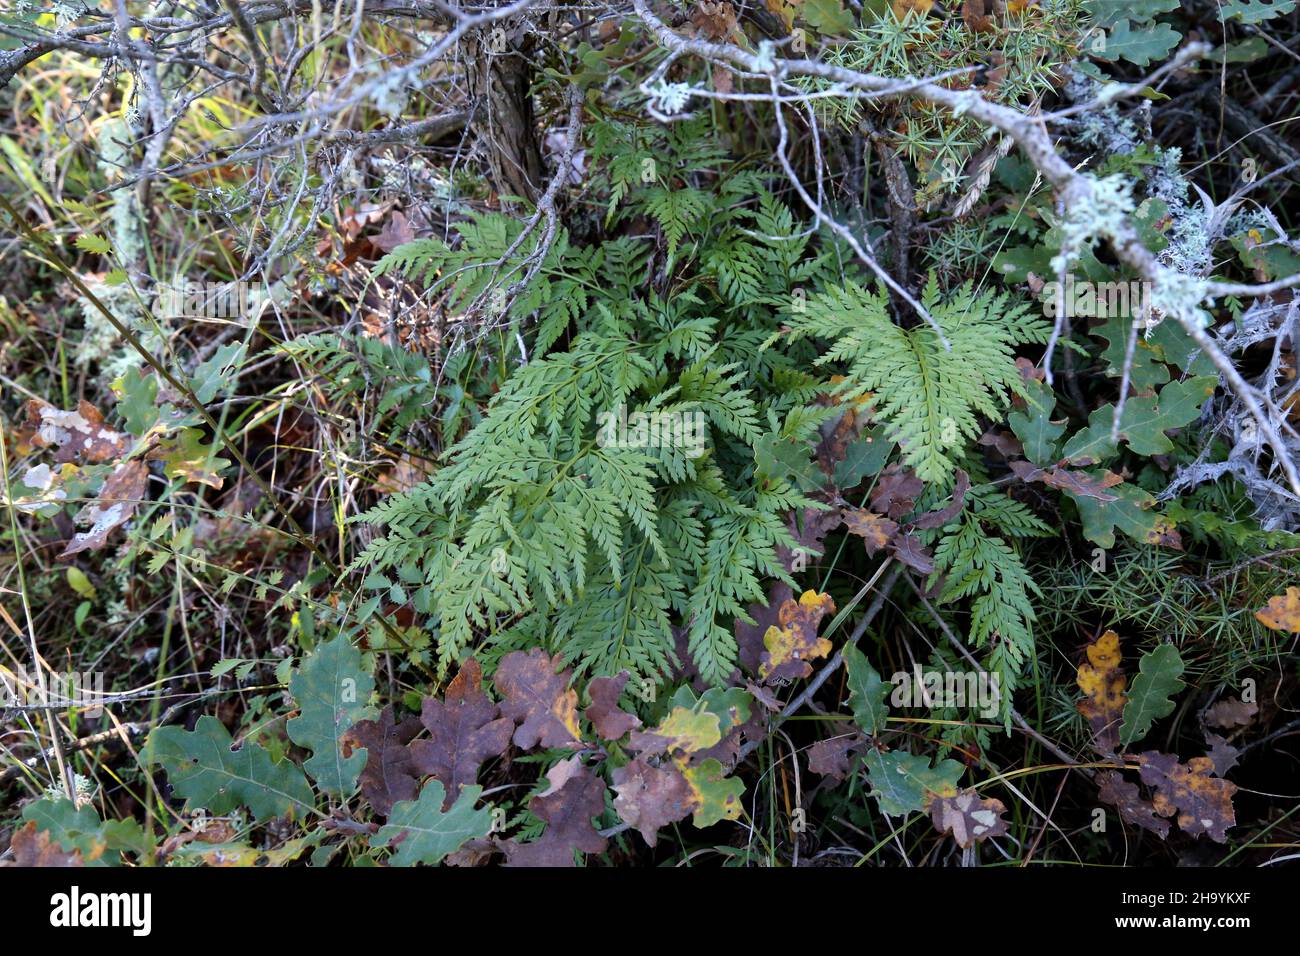 Asplenium adiantum-nigrum, Aspleniaceae. Wild plant, shot in the fall. Stock Photo